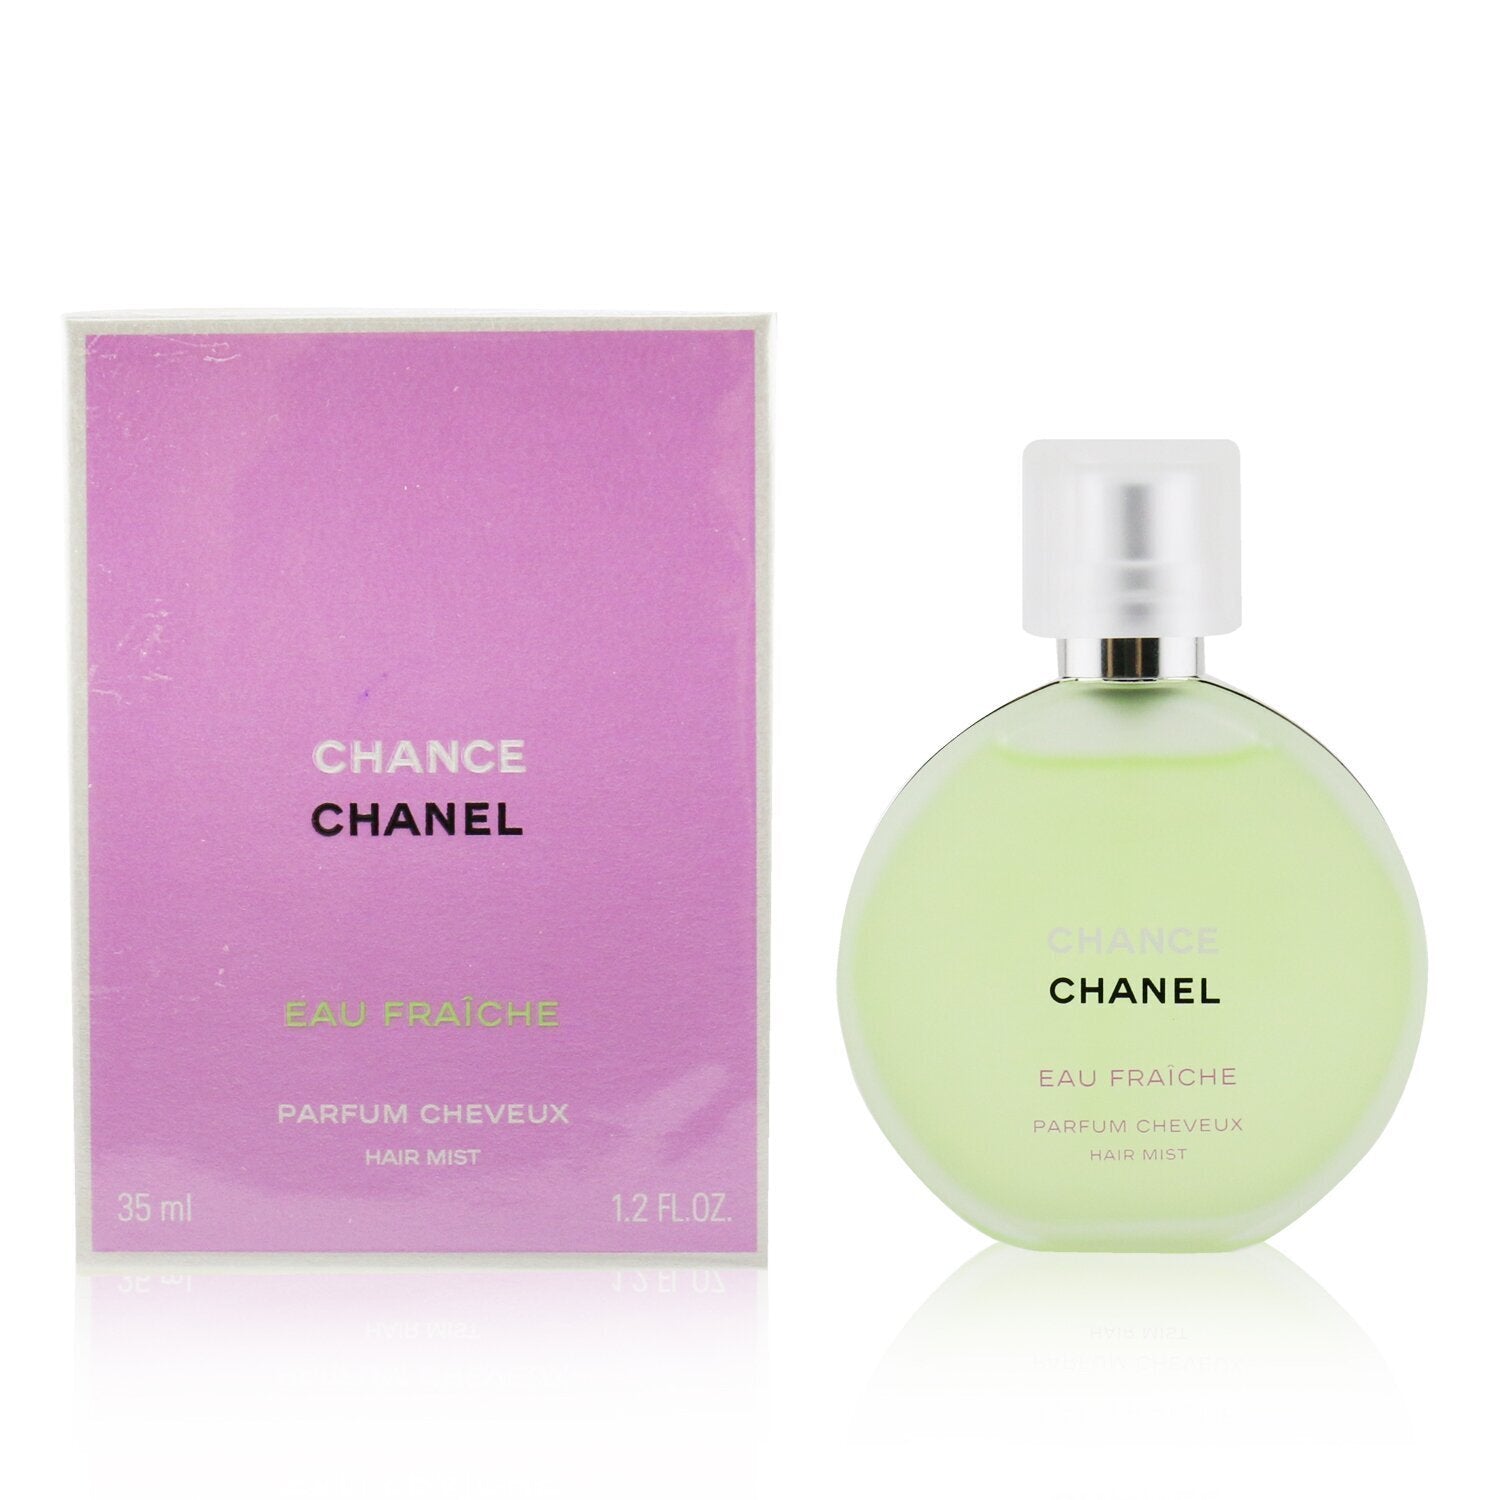 Chanel - Chance Eau Fraiche Hair Mist - 35ML - Women